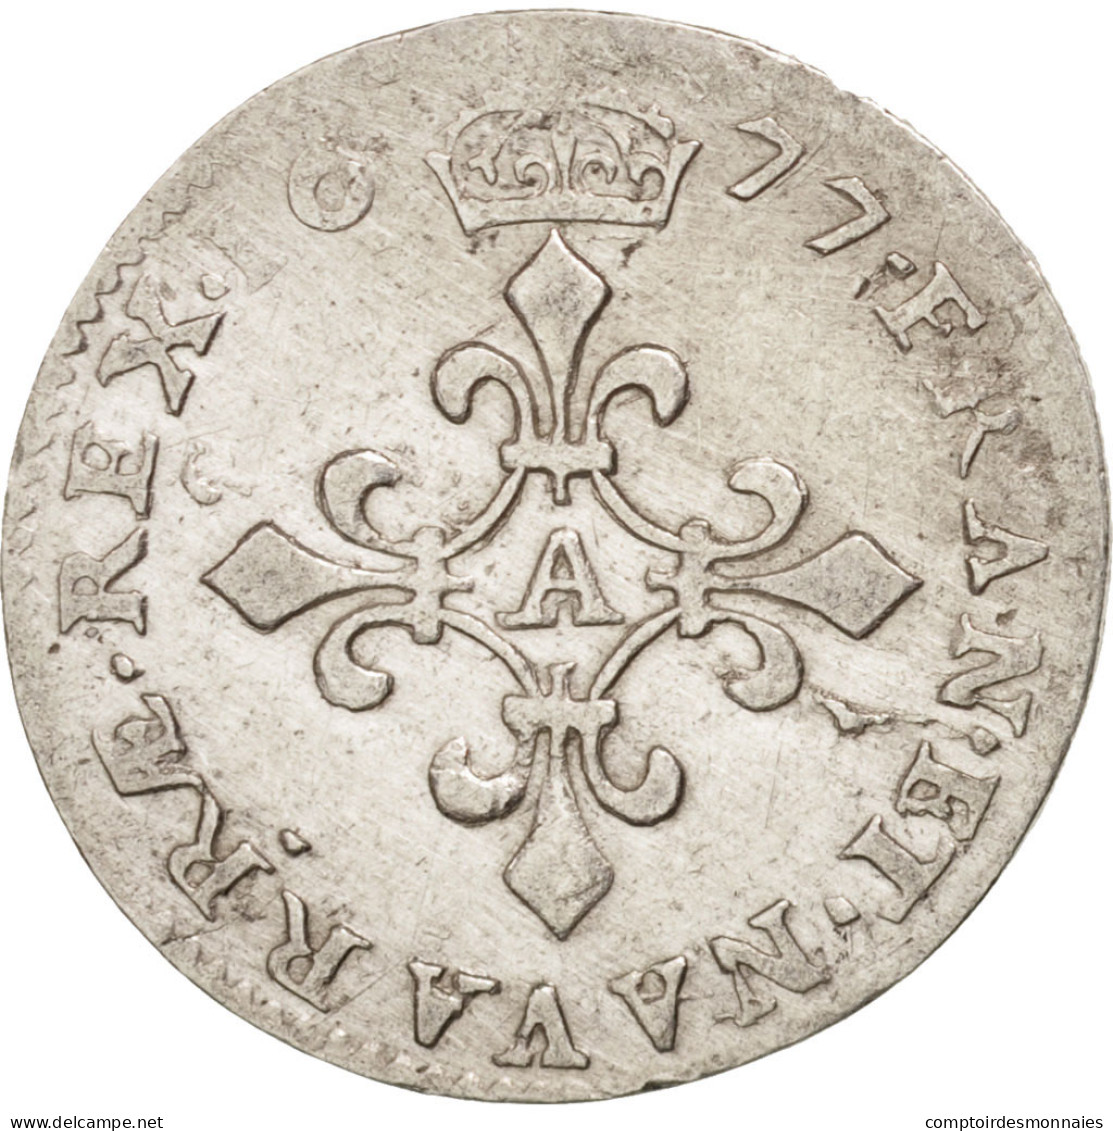 Monnaie, France, Louis XIV, 4 Sols Dits « des Traitants », 4 Sols, 1677 - 1643-1715 Louis XIV The Great